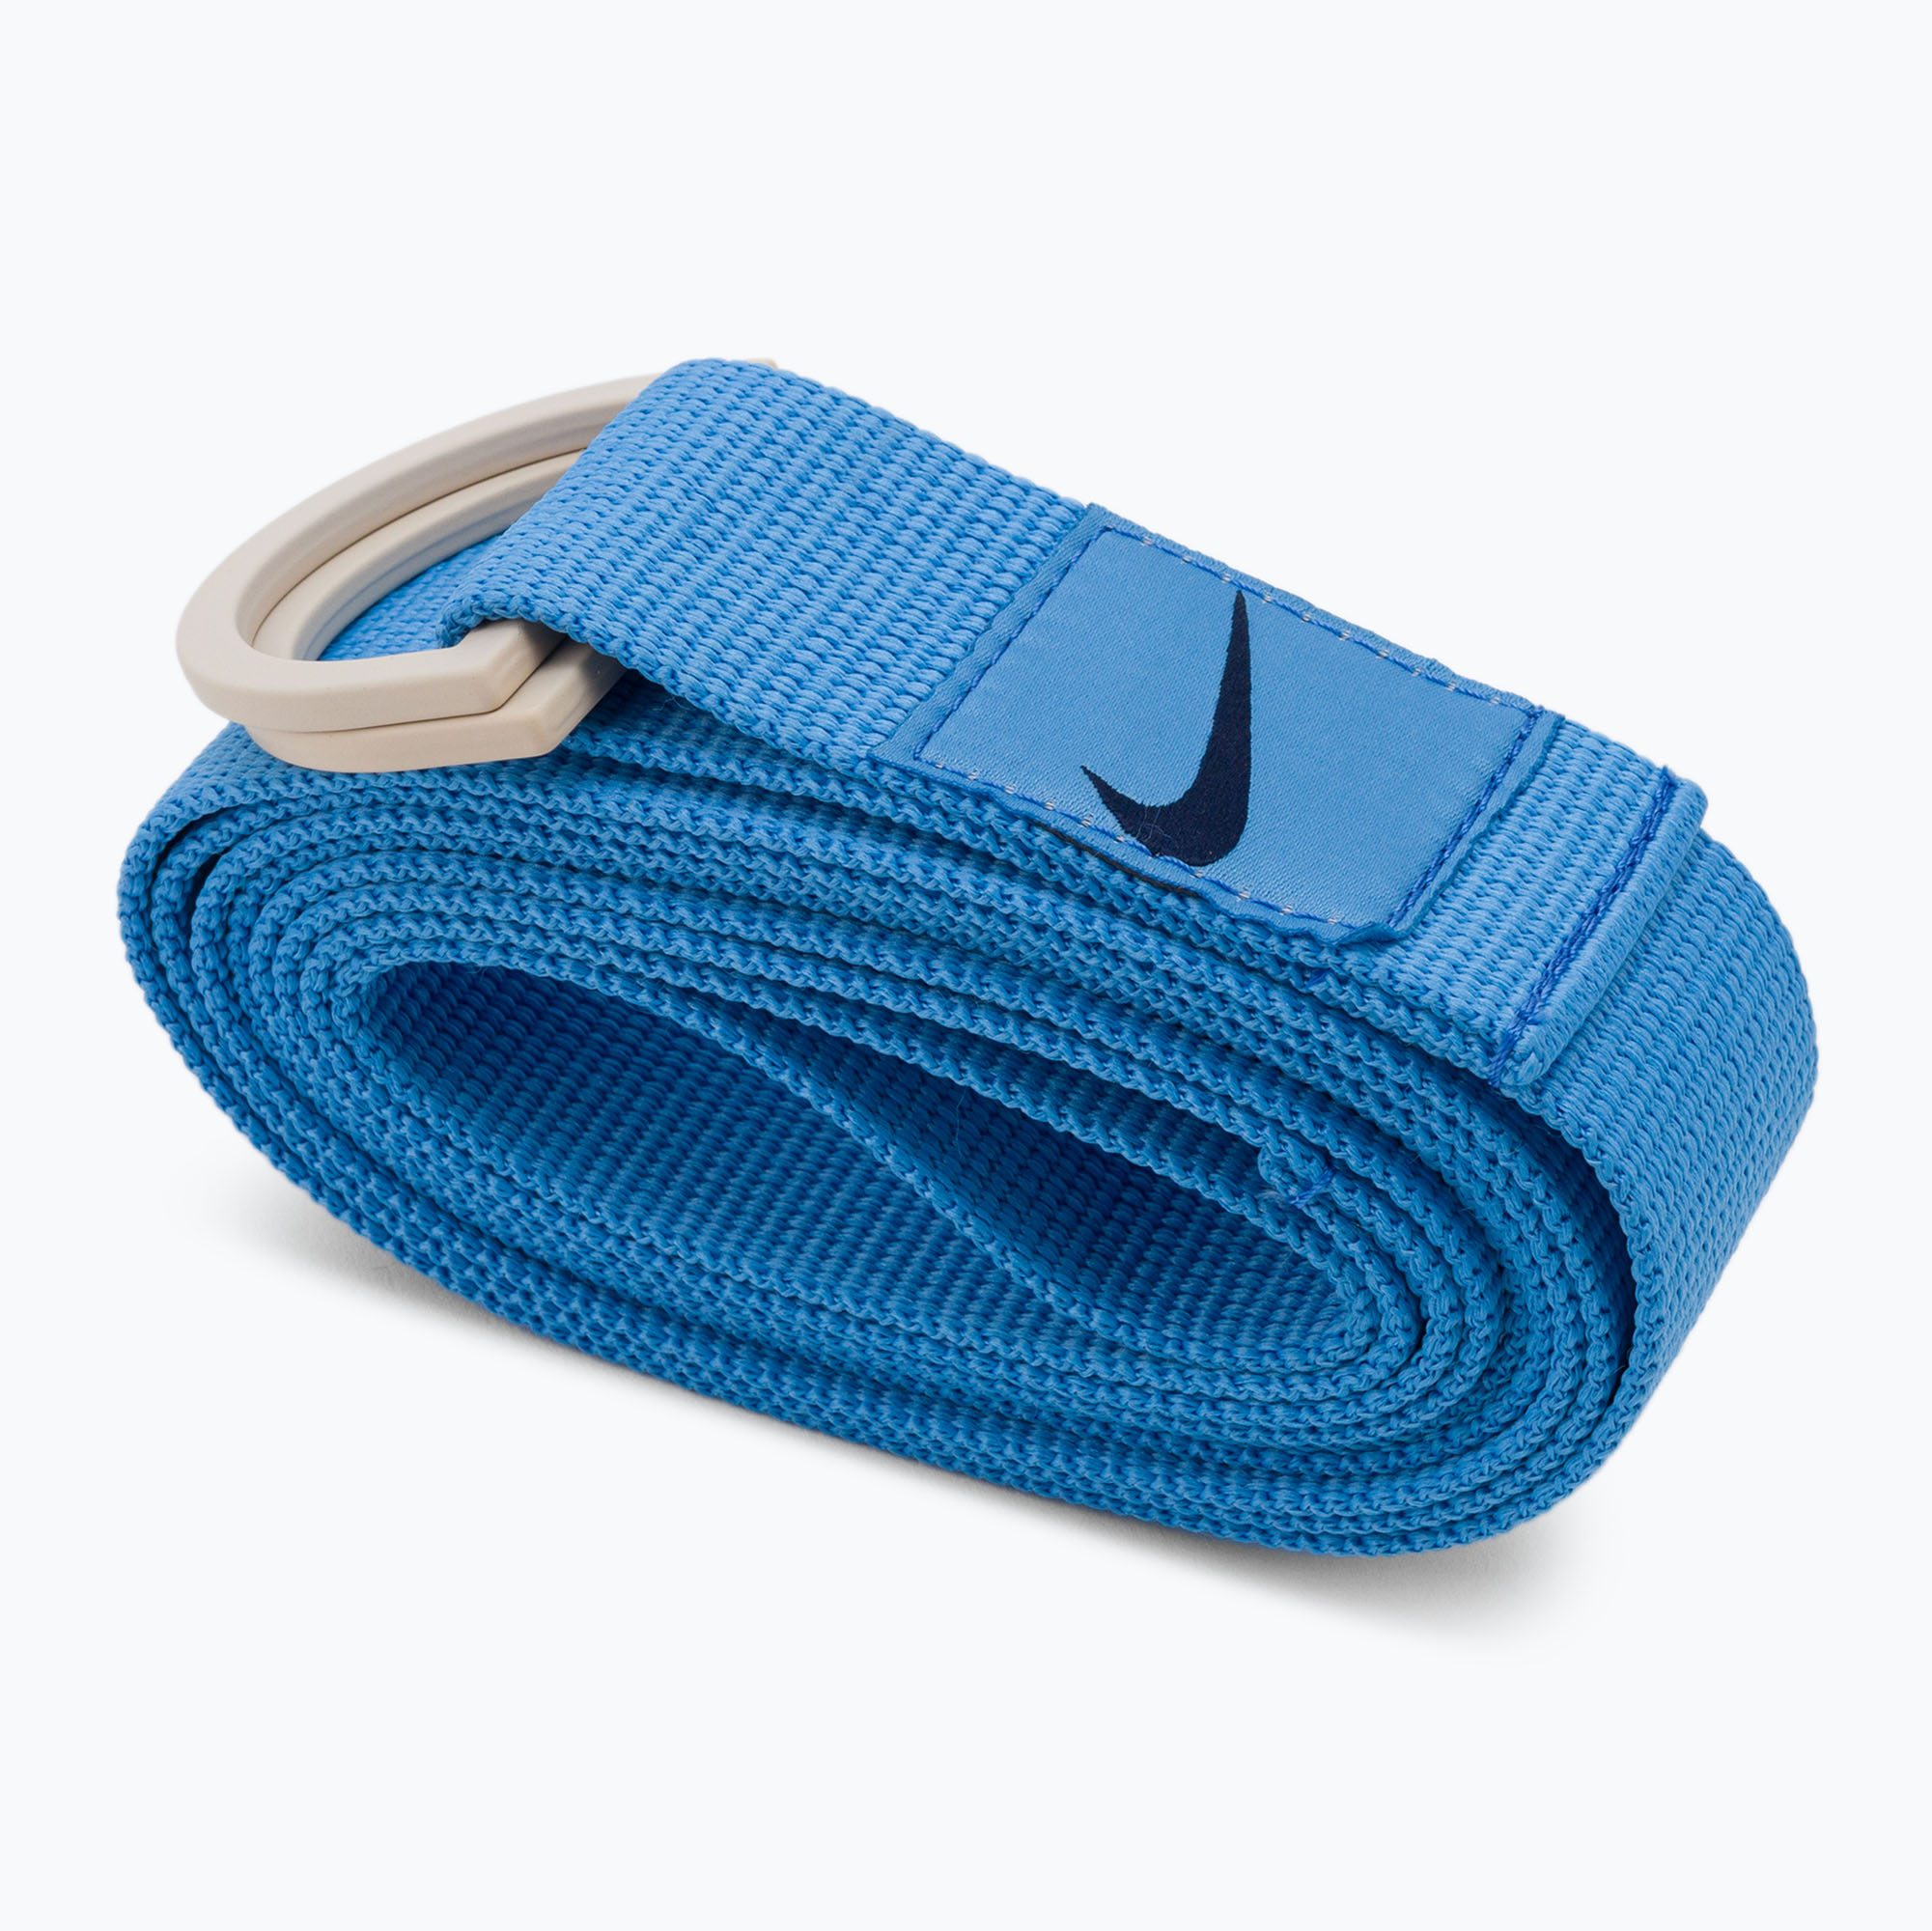 Curea de yoga Nike Mastery 6ft albastru N1003484-414